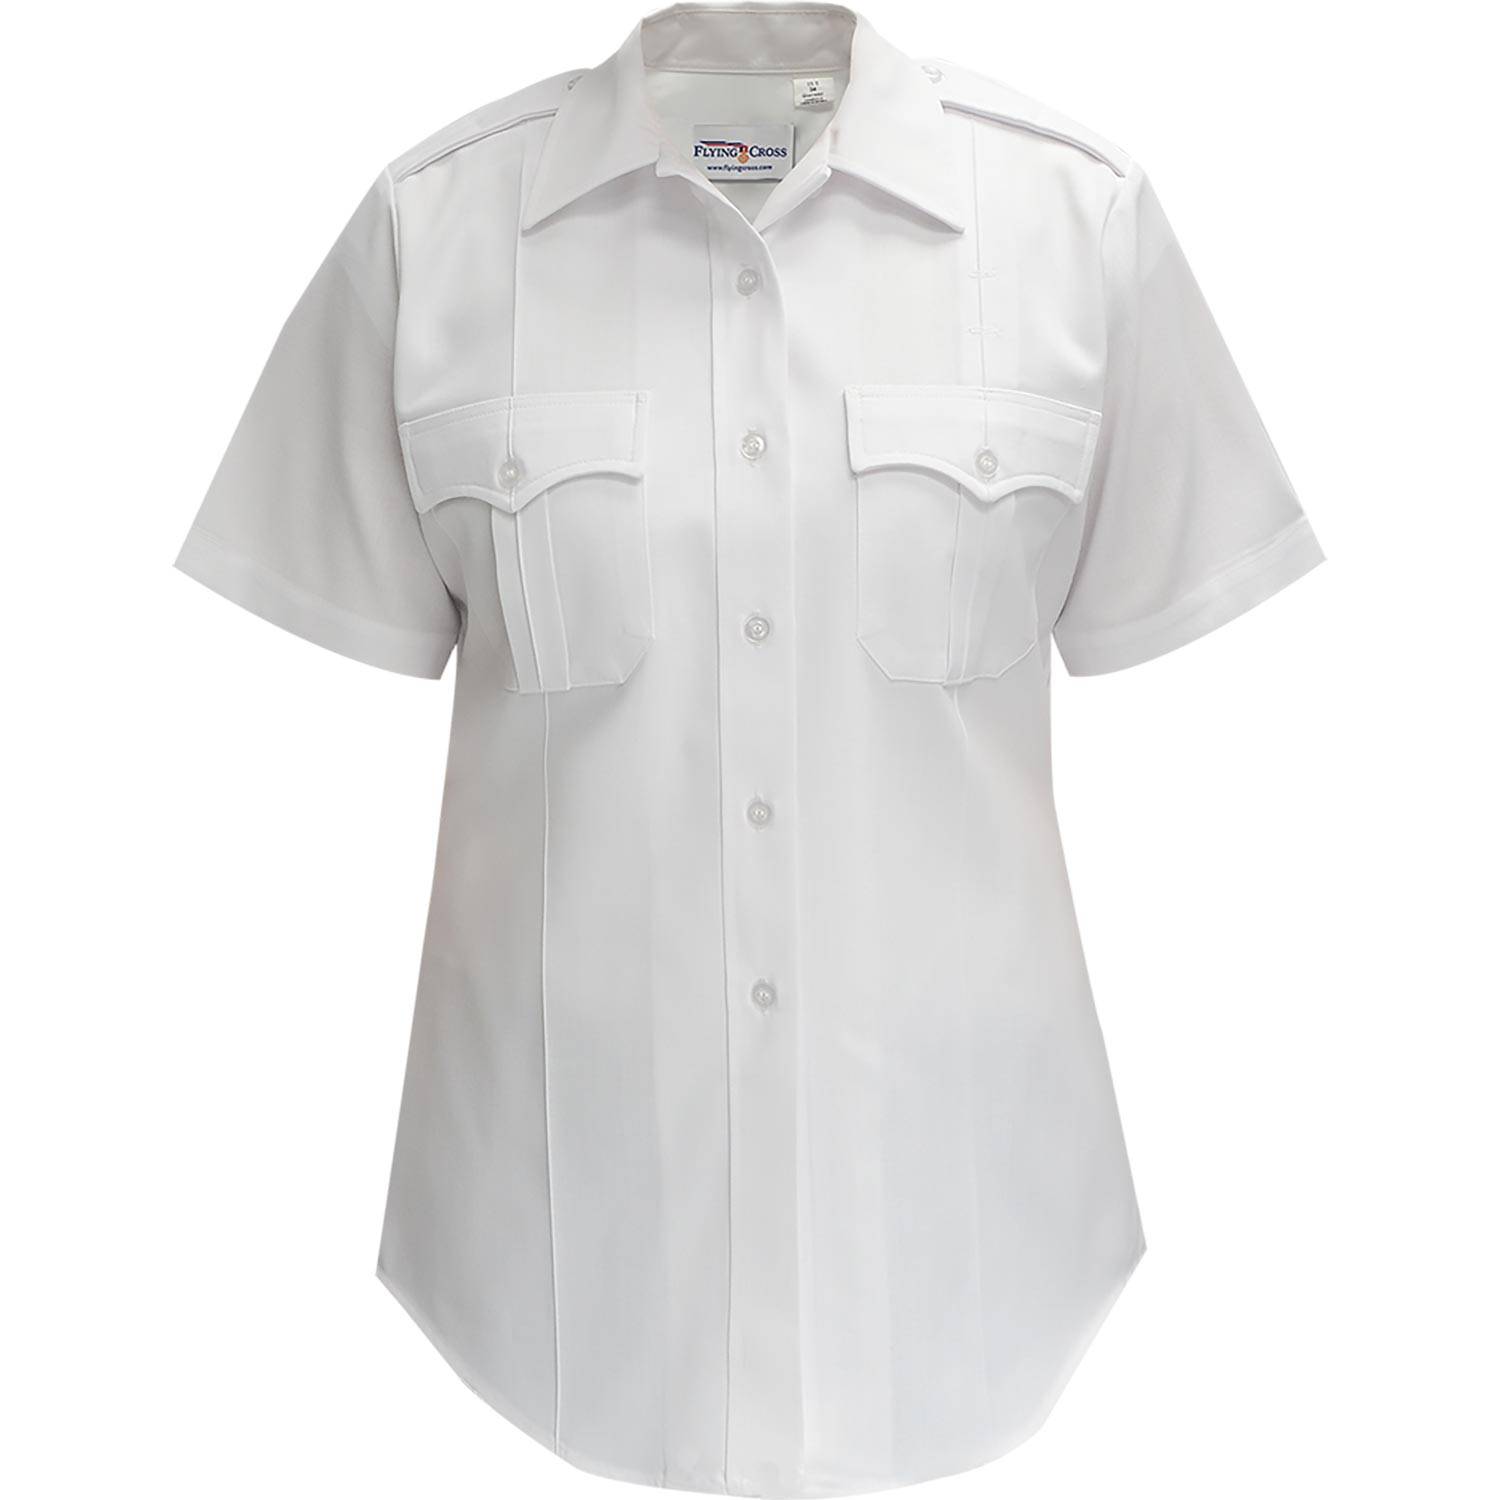 Flying Cross Women's Deluxe Tactical Short Sleeve Shirt